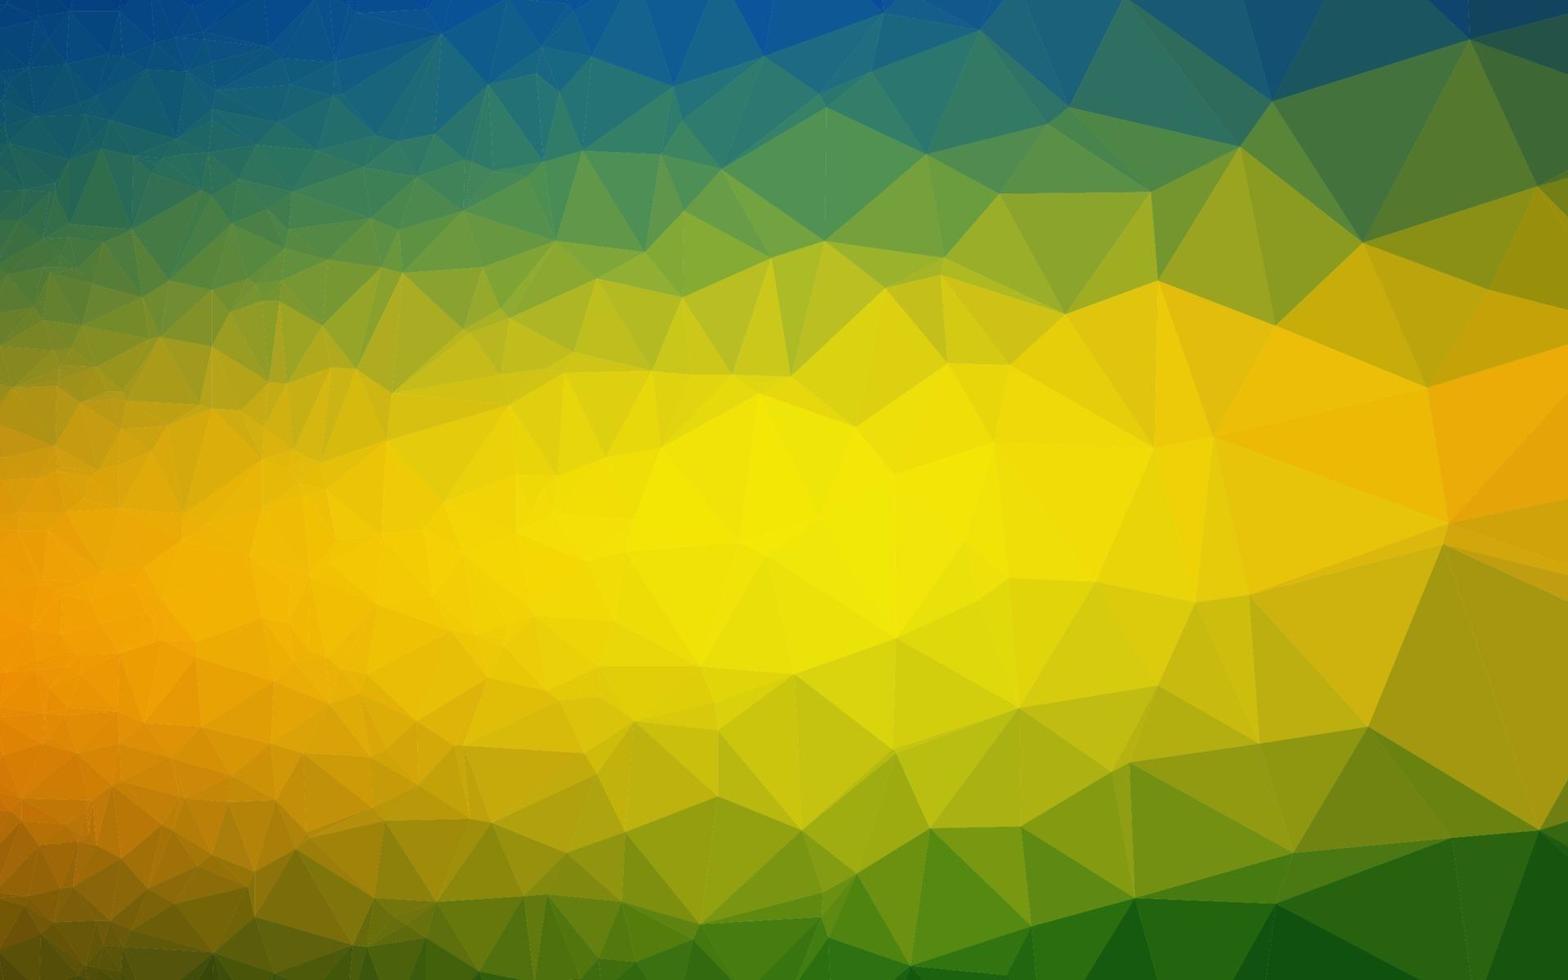 modelo de triângulo embaçado vetor de azul escuro e amarelo.